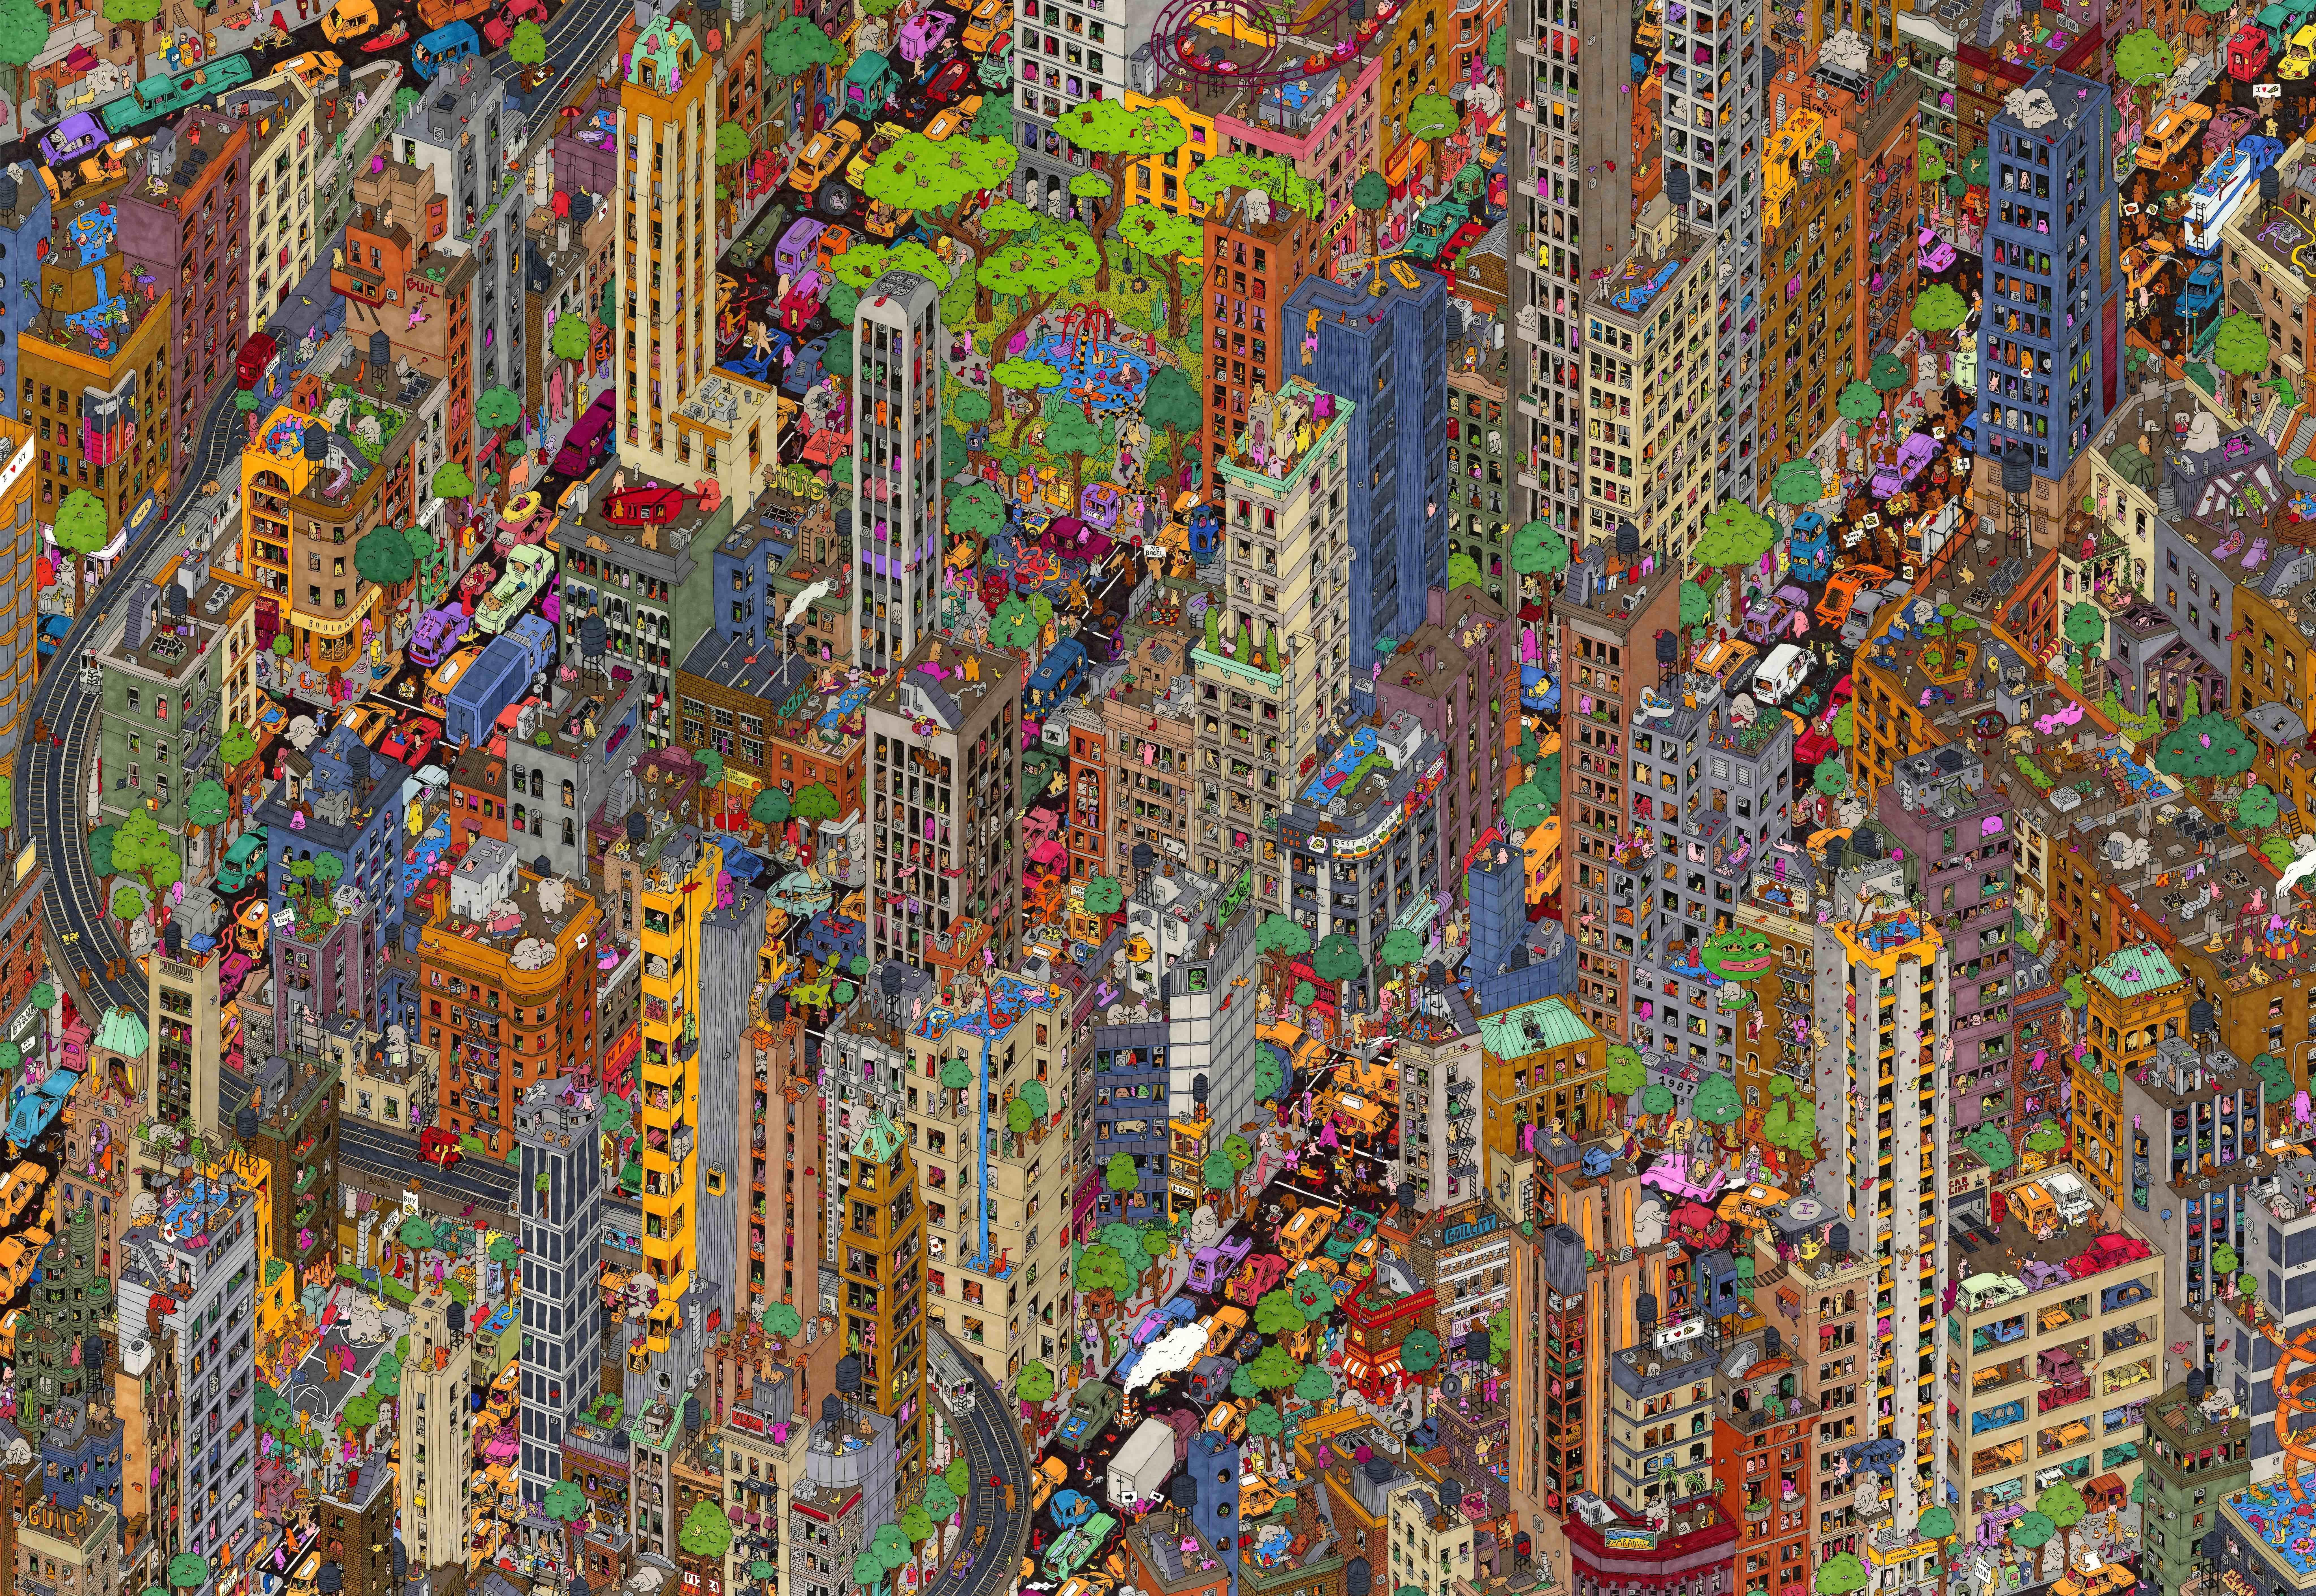 Guillaume Cornet Figurative Art – ighborhoods – aufwändige, handgezeichnete, farbenfrohe Illustration des städtischen New York